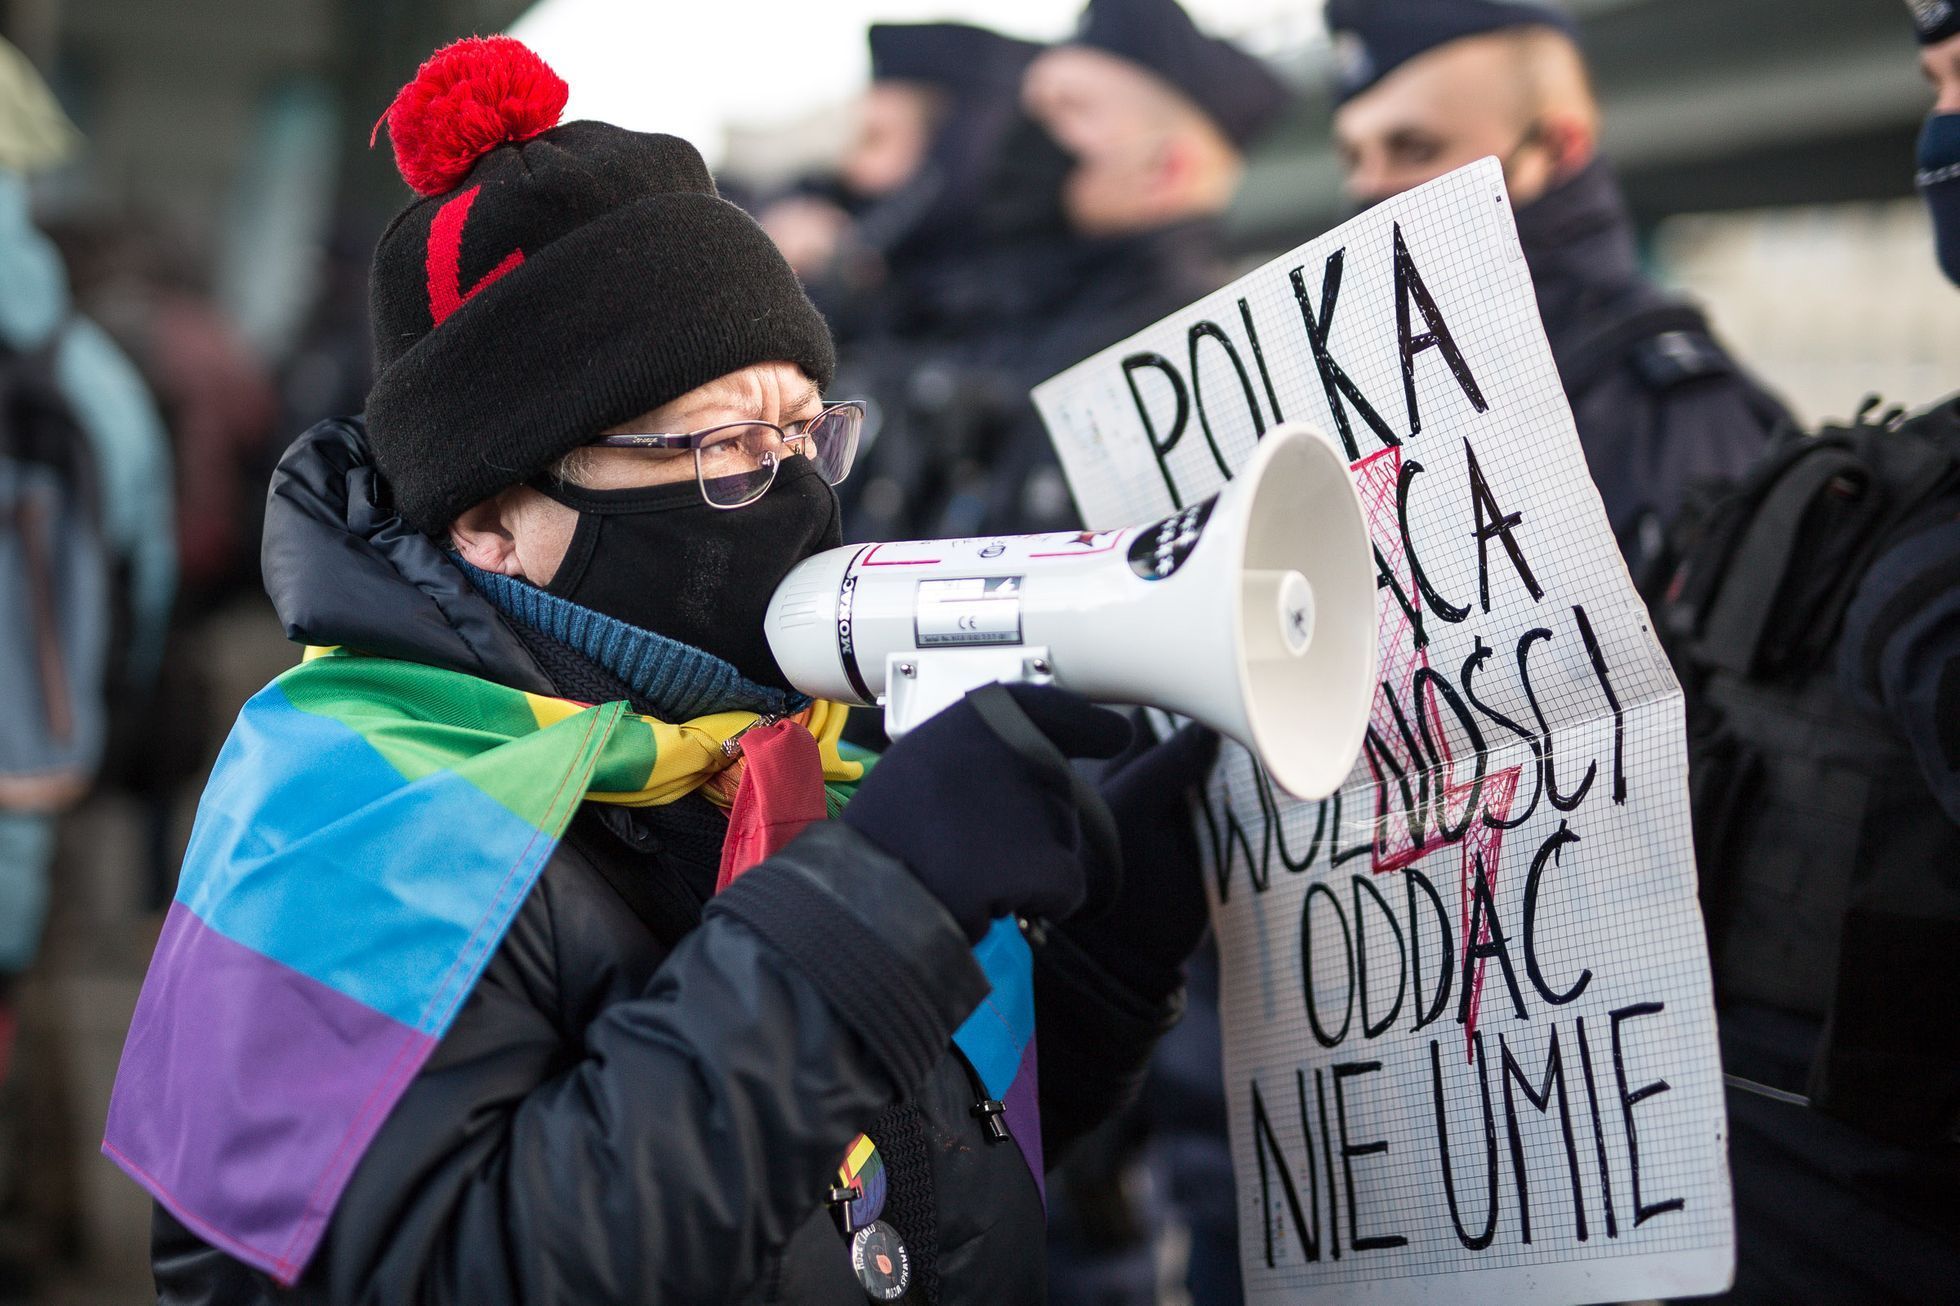 Babička Kasia - Stávka žen, Polsko, Varšava, protesty, Strajk Kobiet, policie, potraty